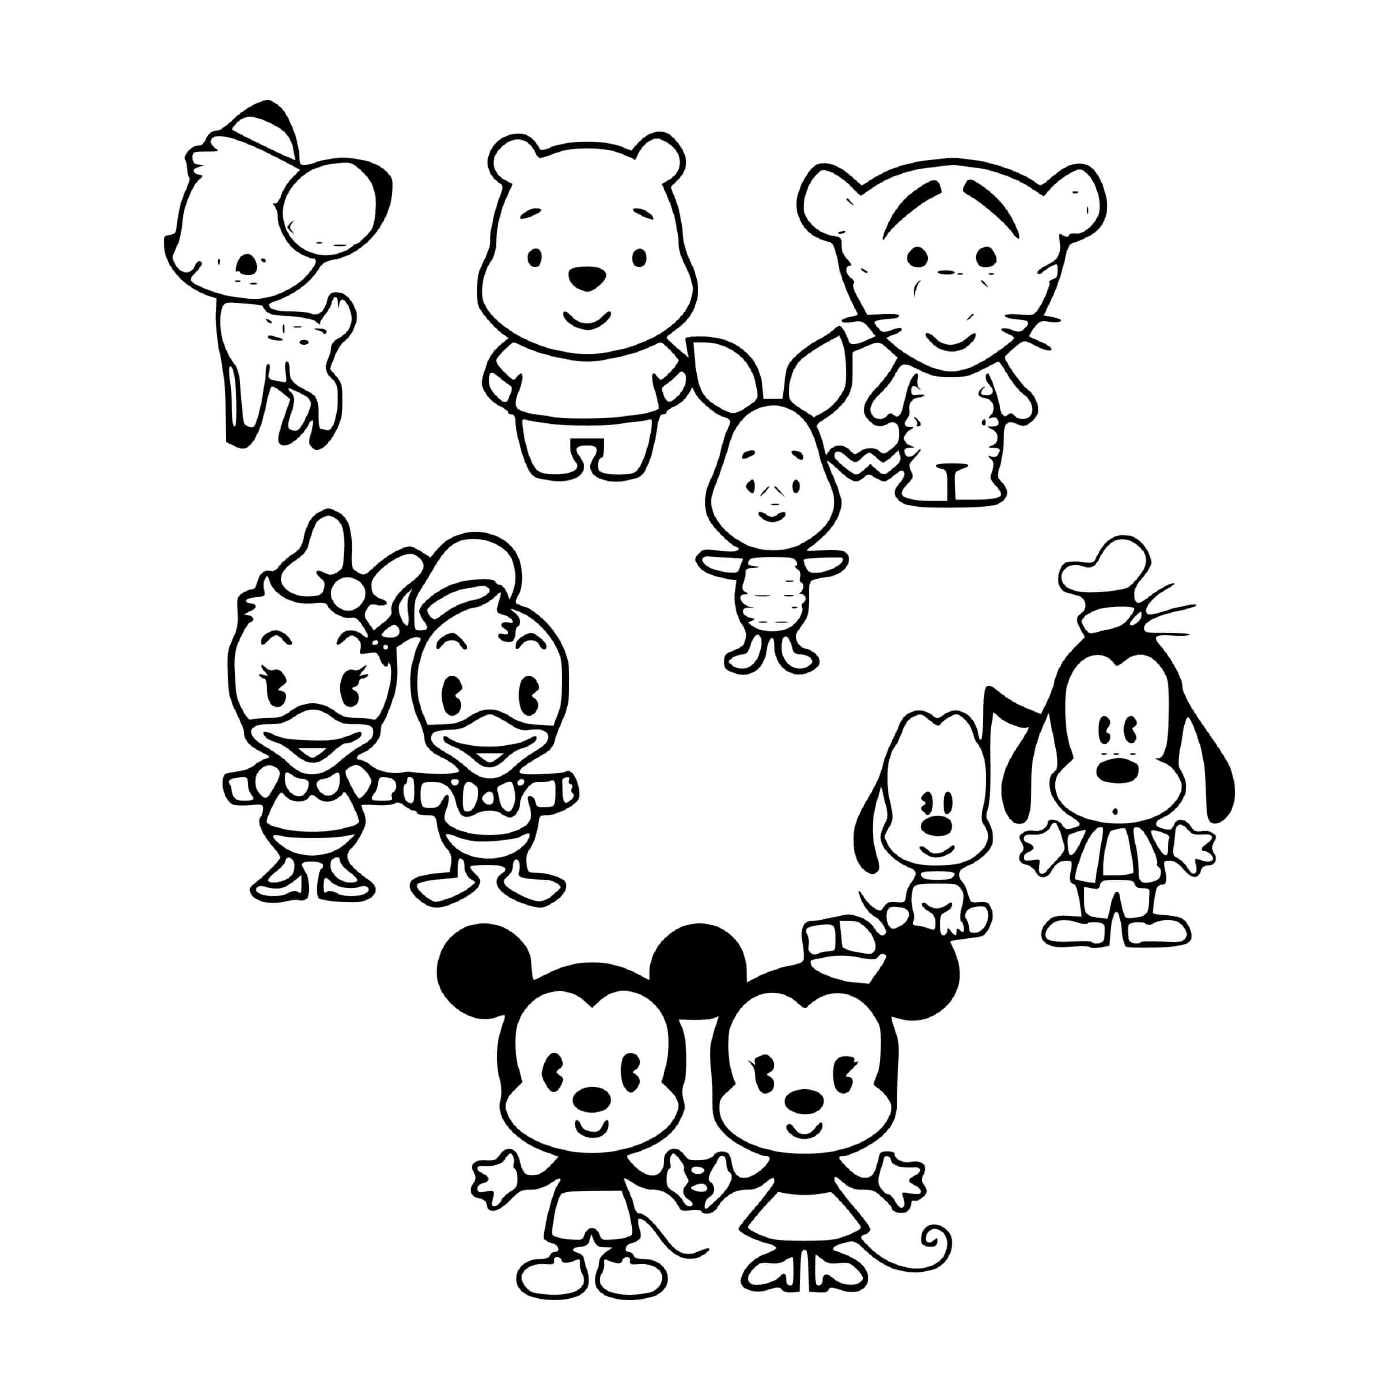  Personagens de desenhos animados da Disney 